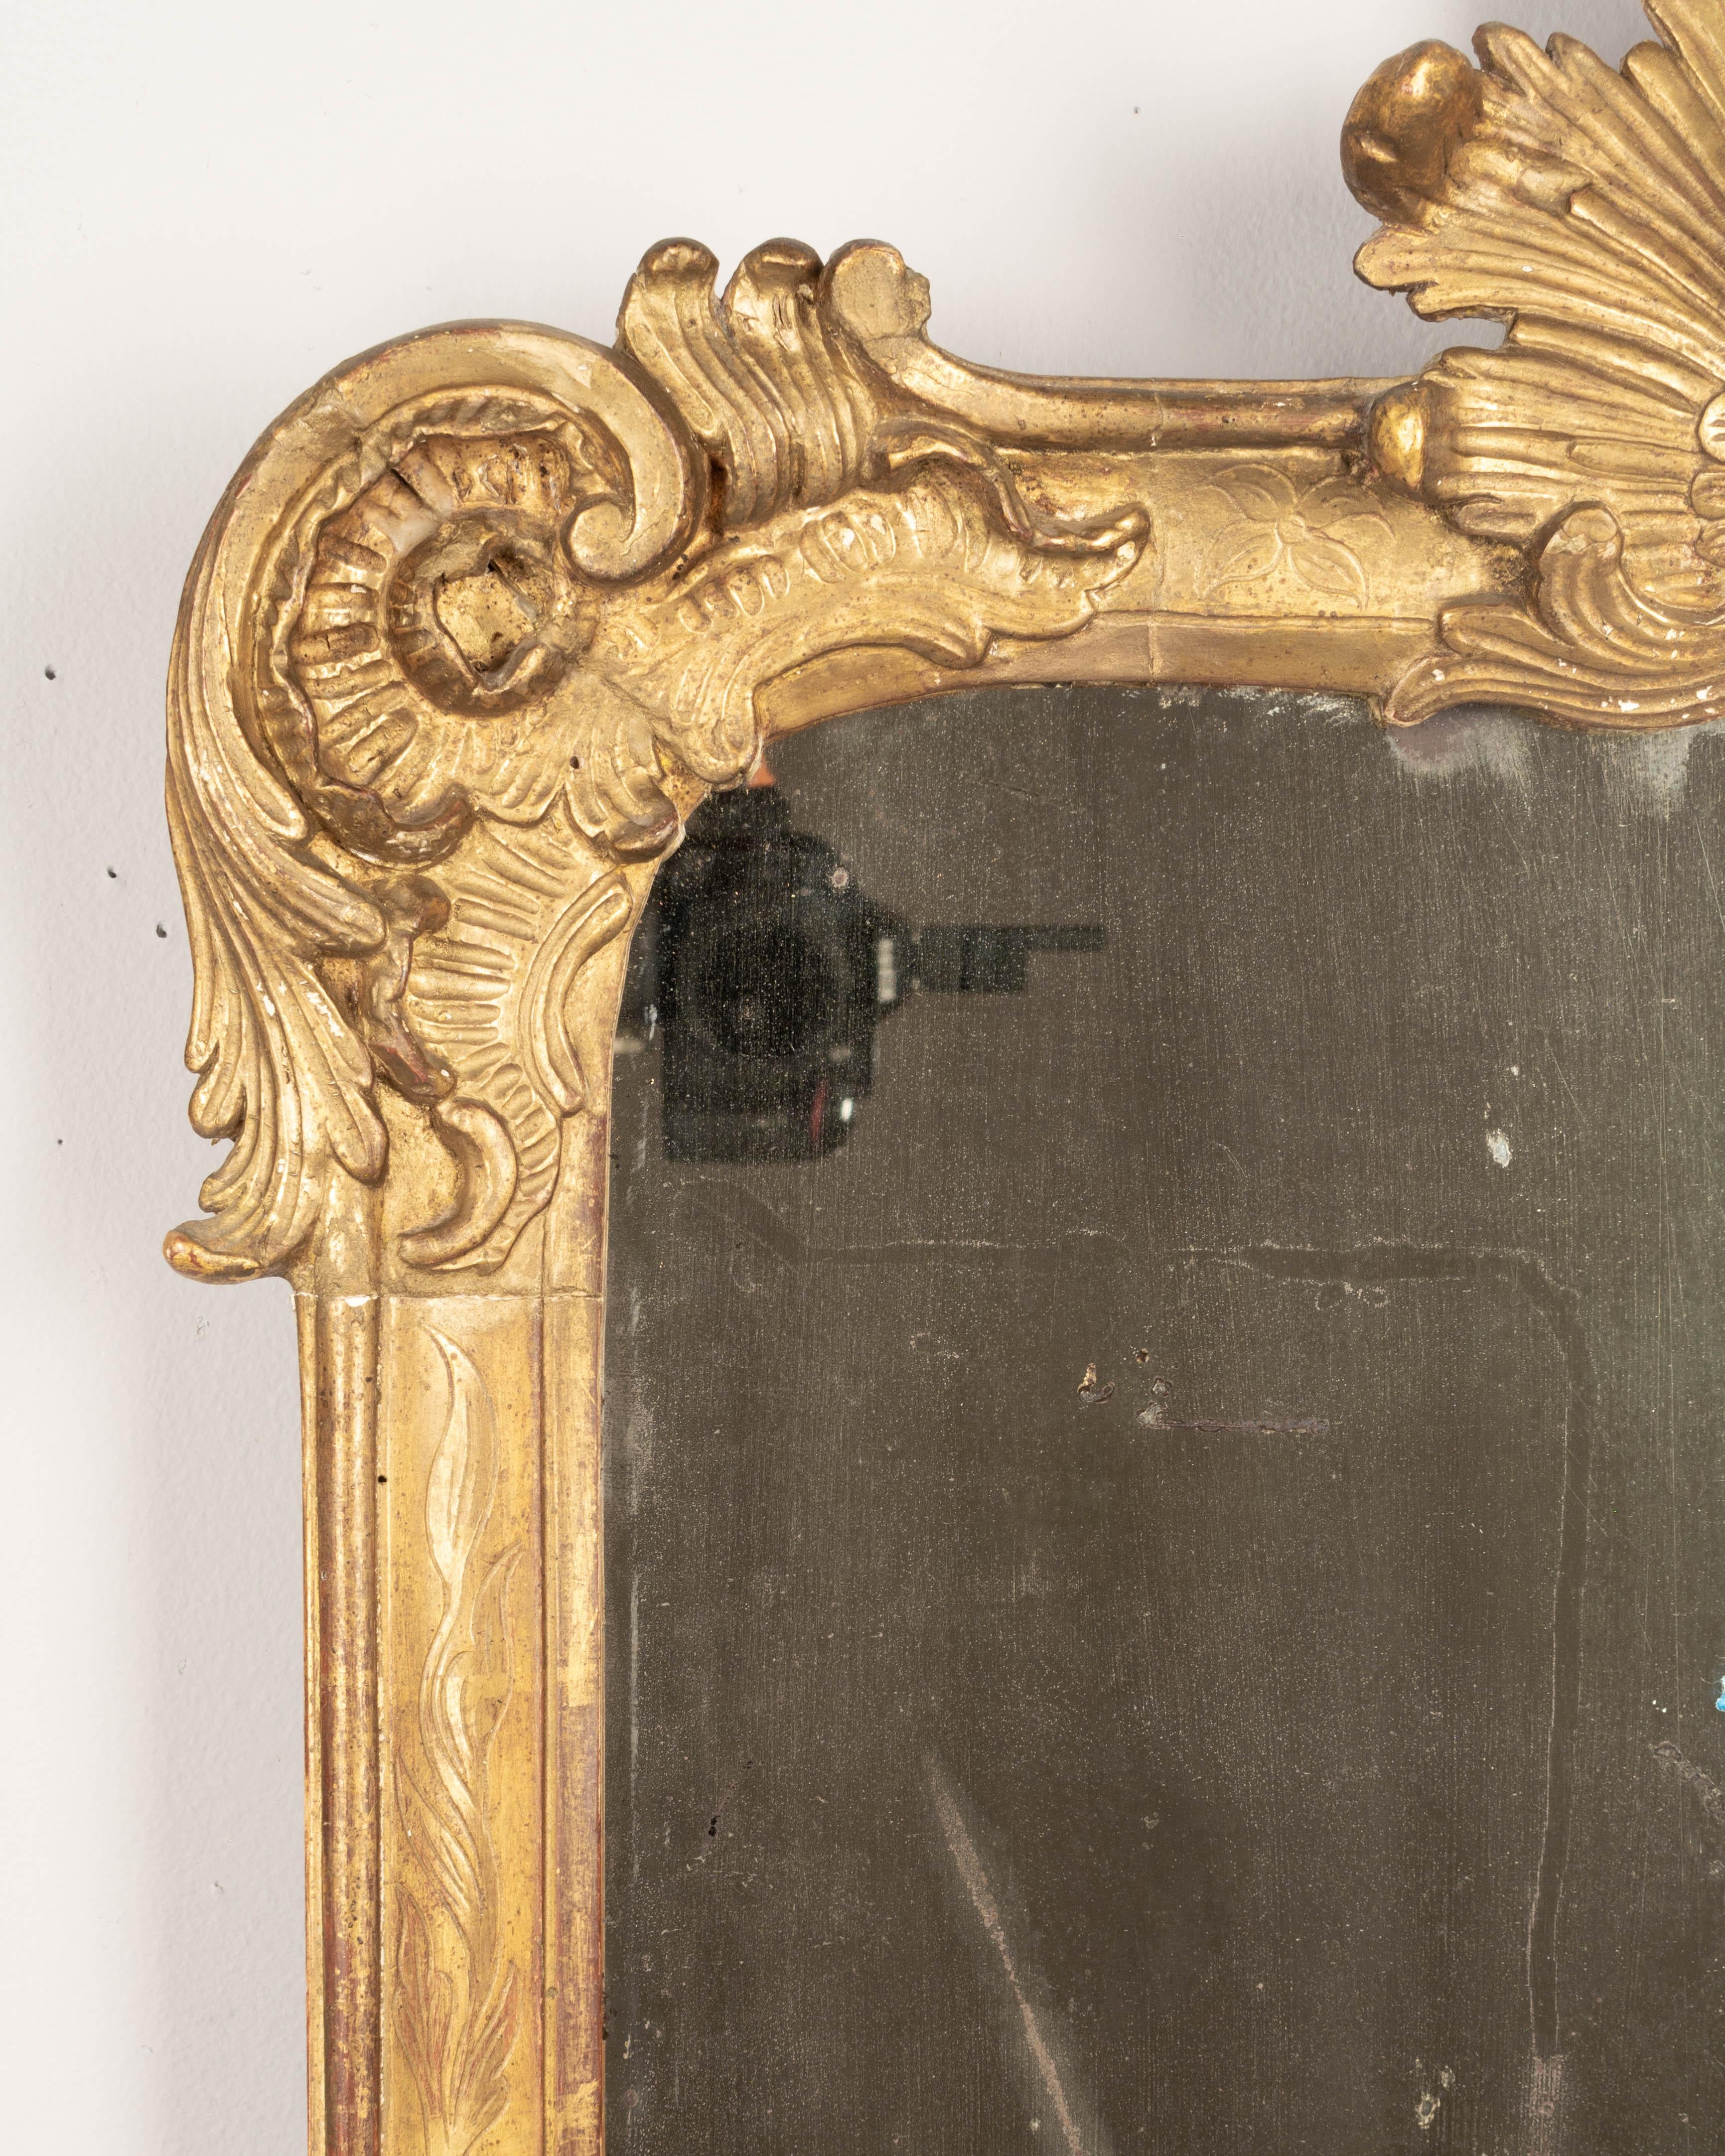 Miroir en bois doré de la période de la Régence, du XVIIIe siècle, avec une crête en forme de soleil et un décor d'angle incurvé en forme de volute. Belle patine avec une finition dorée pâle. Miroir d'origine avec de l'argenture ancienne et de